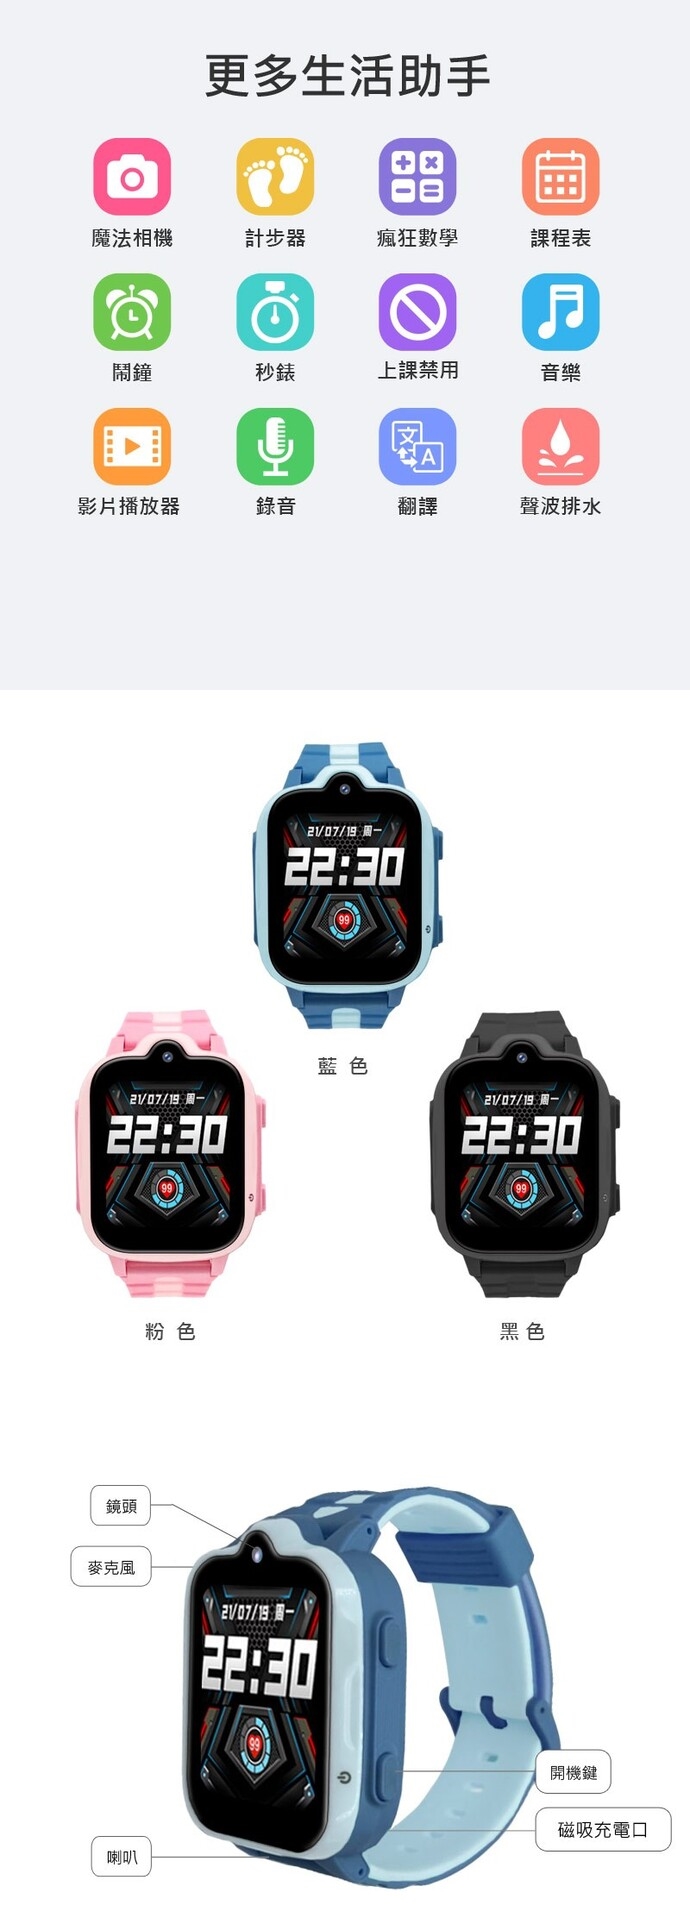 兒童智慧型手錶推薦IS CW-01 兒童智慧GPS定位手錶